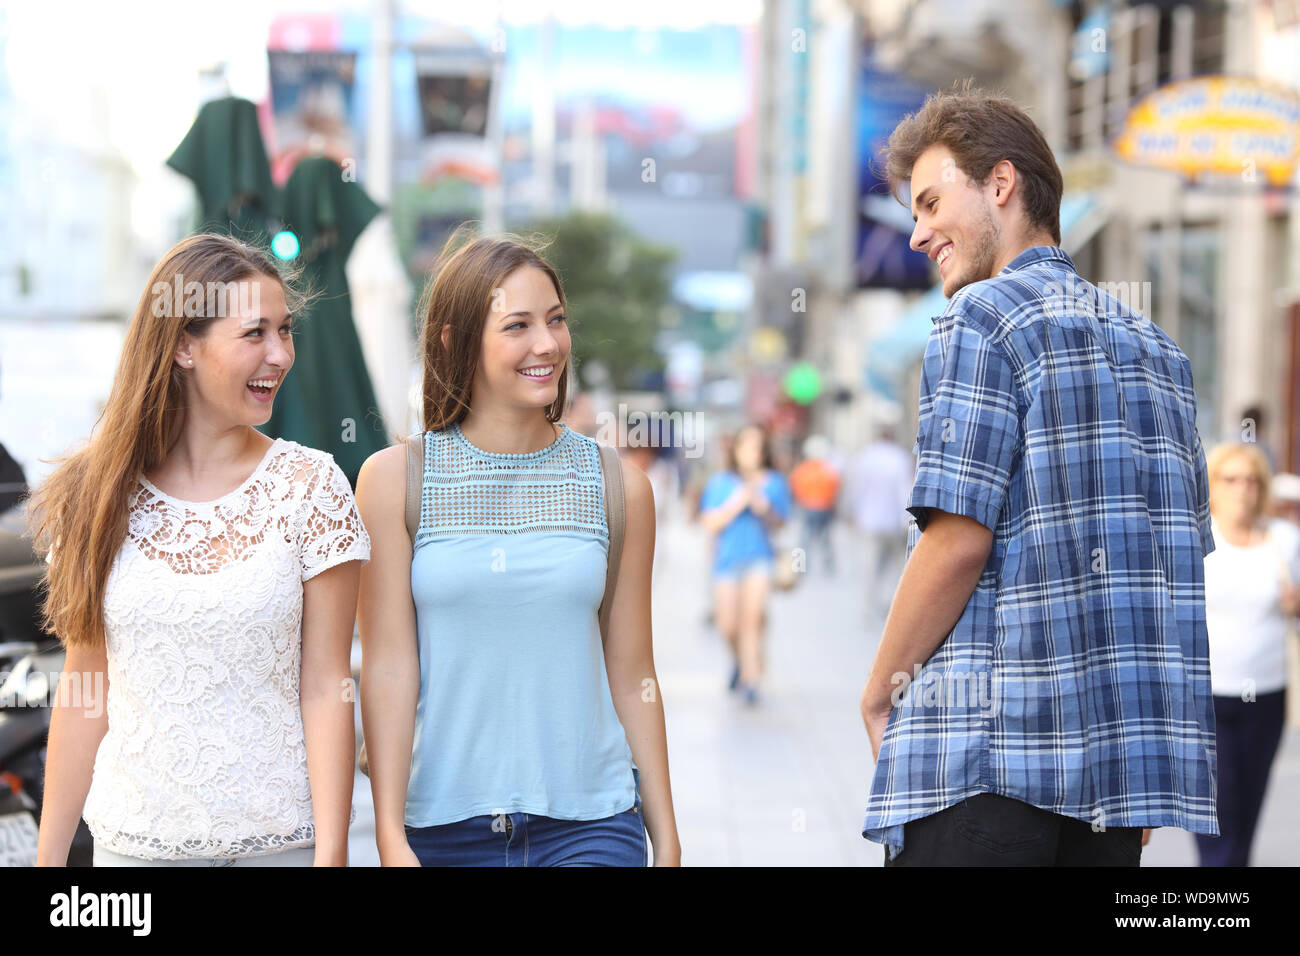 Glucklicher Mann Flirten Mit Tho Gluckliche Frauen Zu Fuss Auf Der Strasse Stockfotografie Alamy